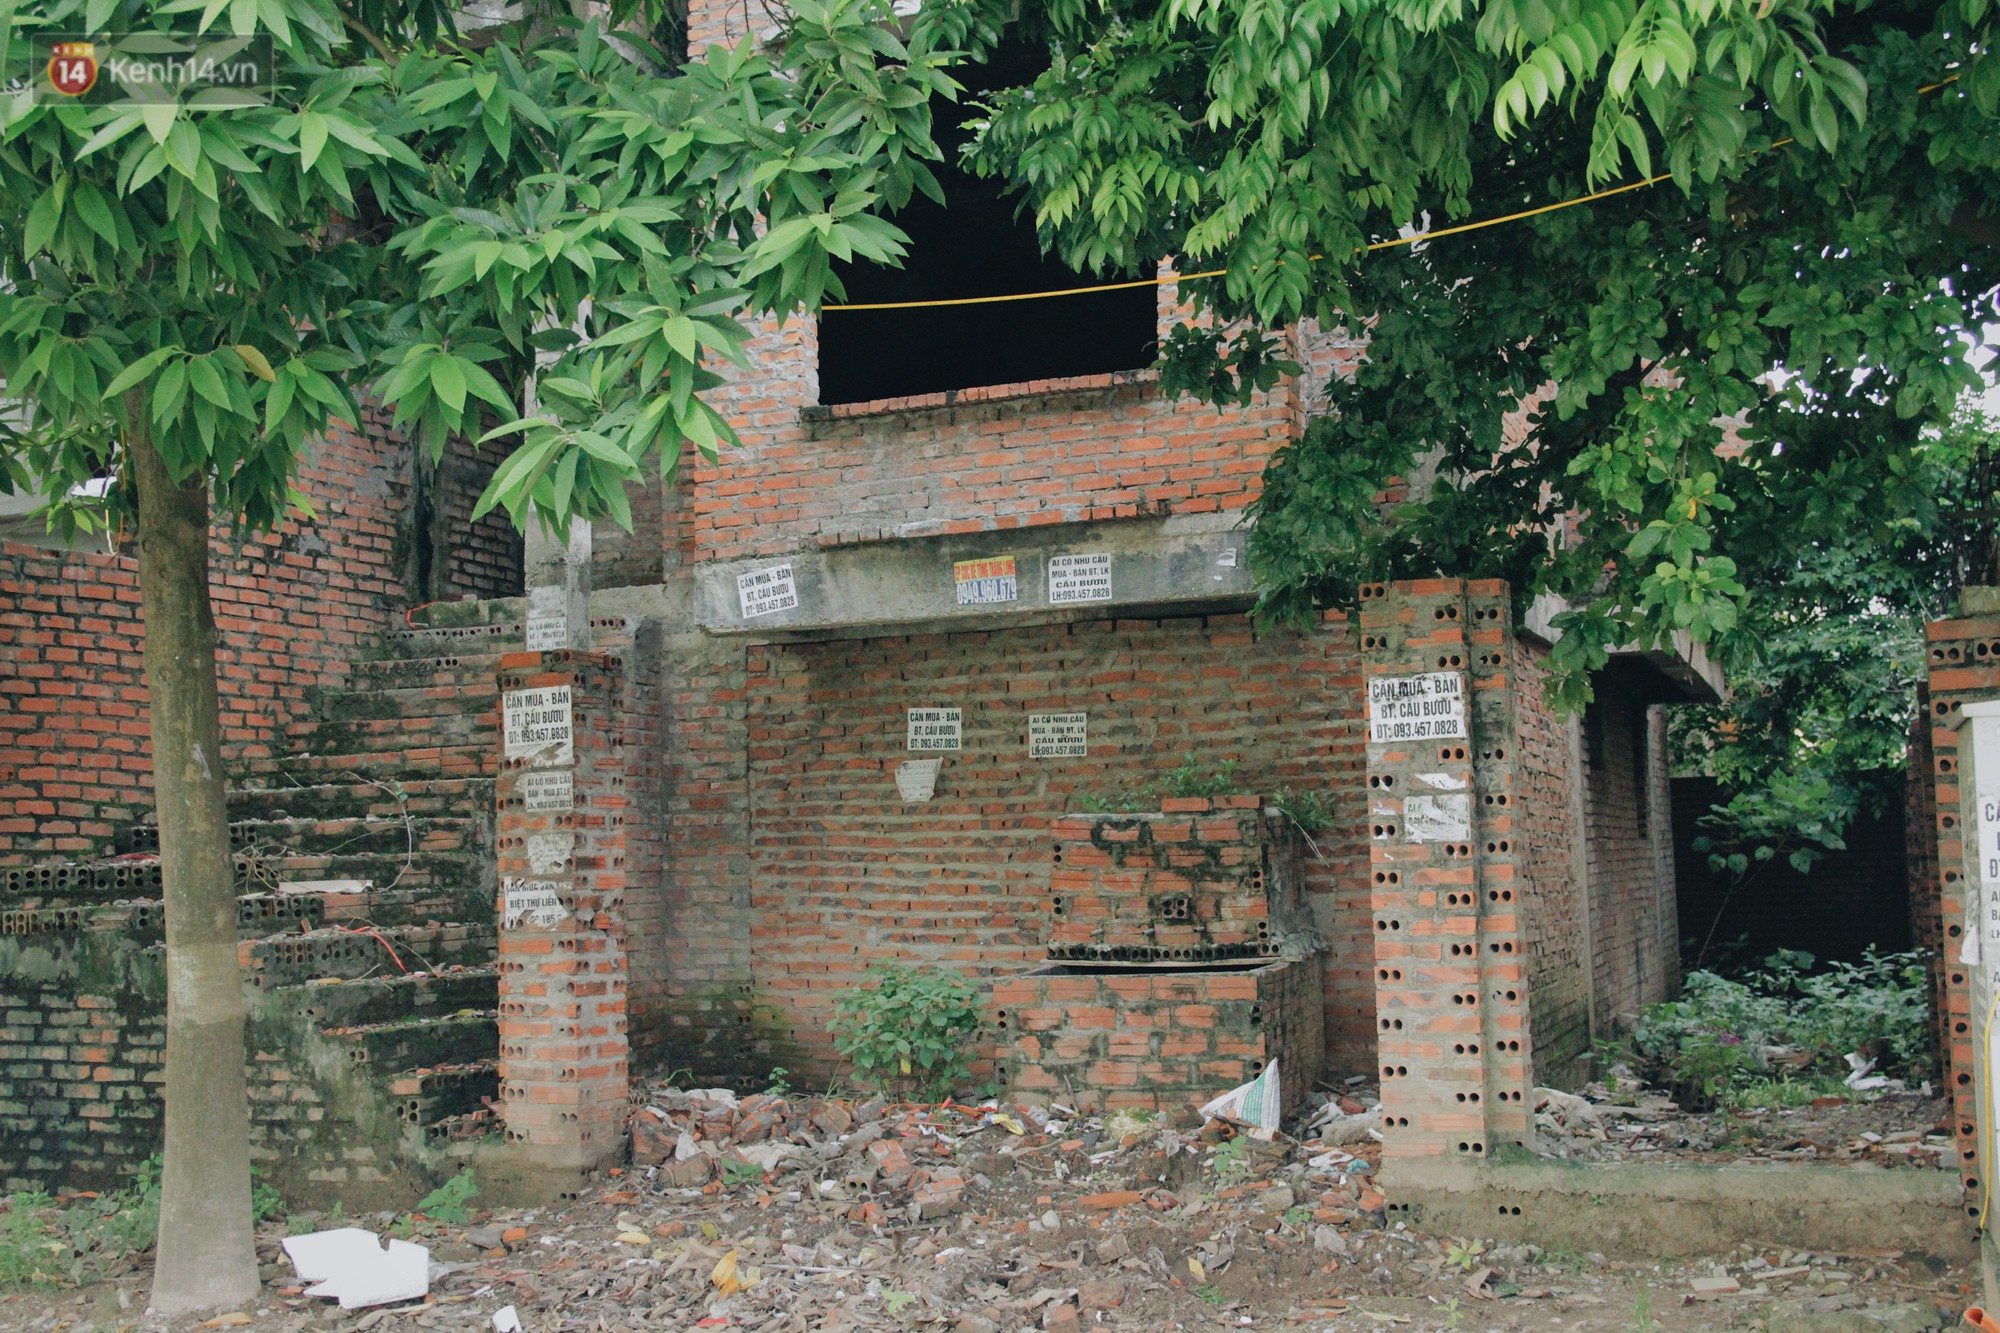 Dán cảnh cáo tiêm chích sẽ bị đánh và phạt nặng tại những biệt thự tiền tỷ bỏ hoang ở Hà Nội, nhiều con nghiện vẫn phớt lờ - Ảnh 5.